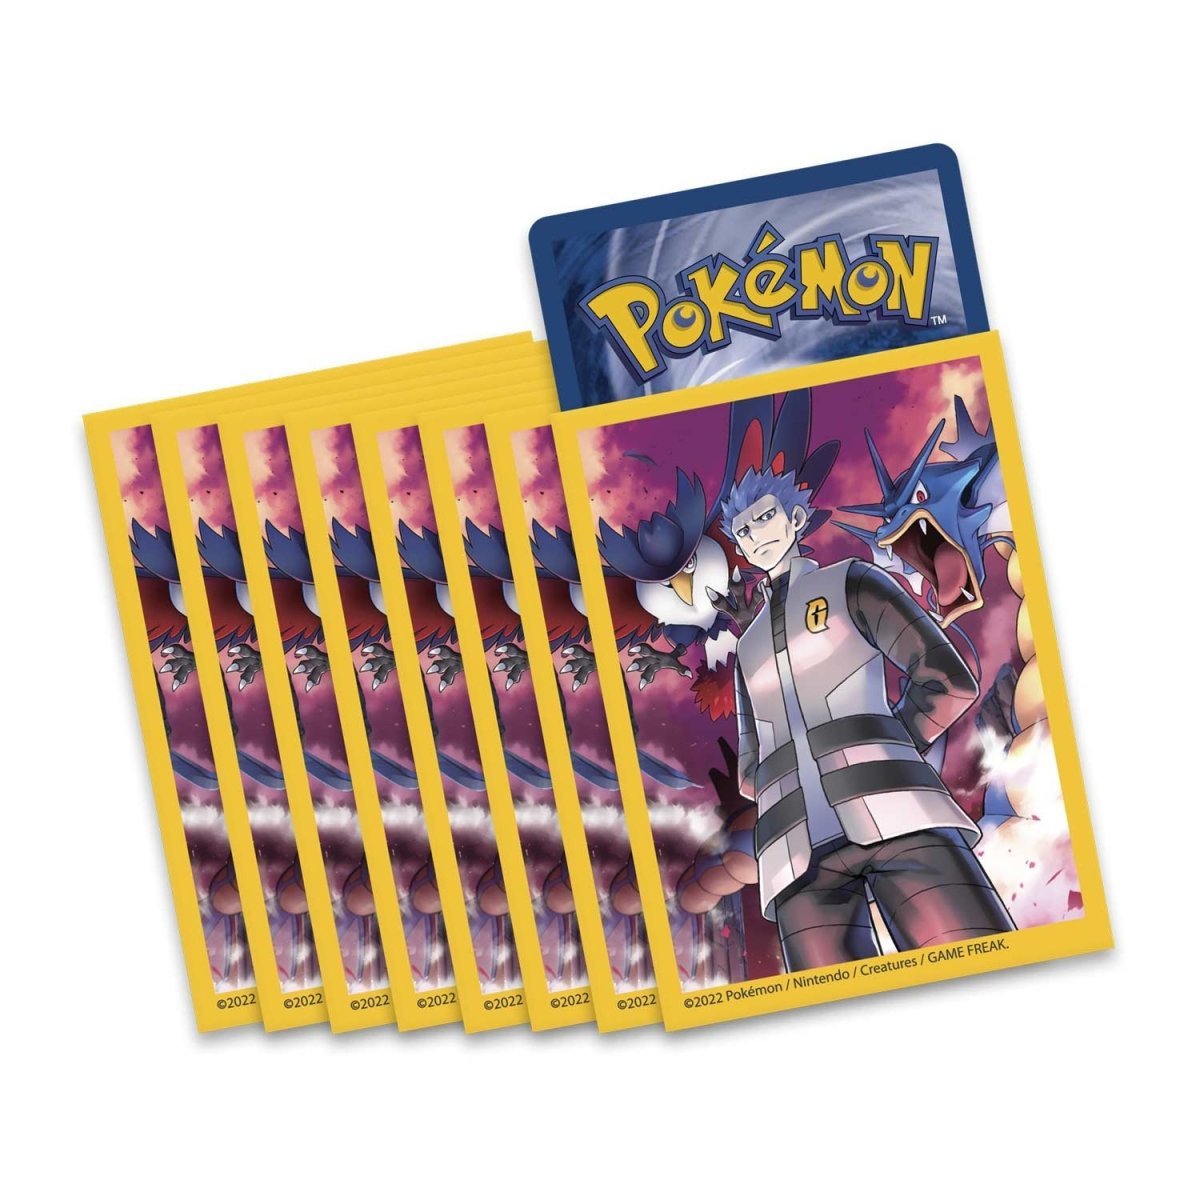 Pokémon TCG: Cyrus Premium Tournament Collection - PokeRvm